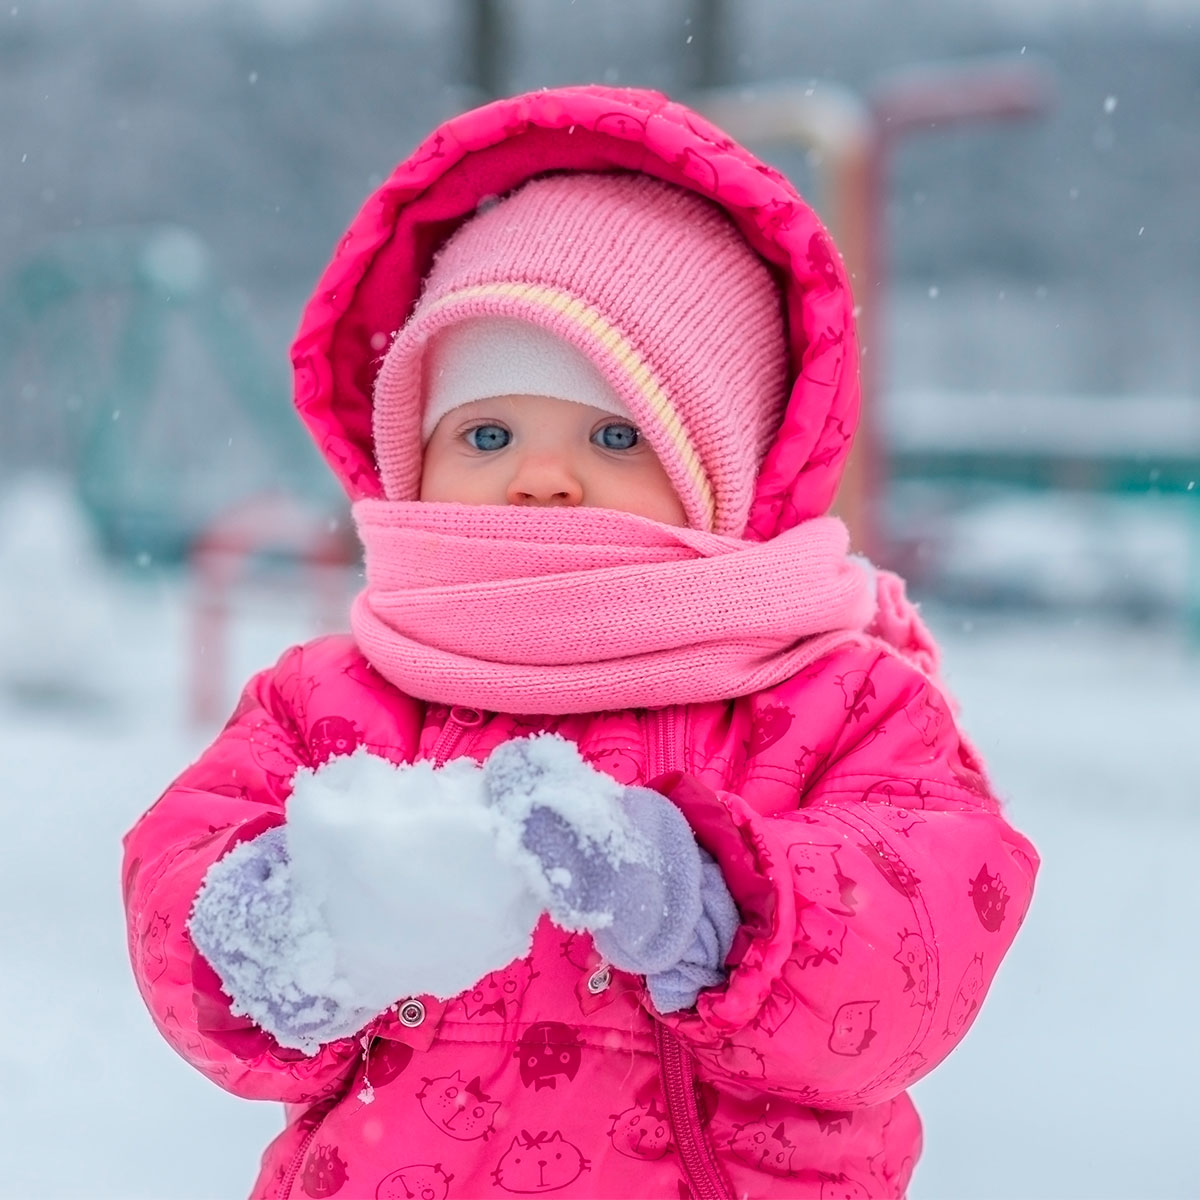 Vestir al bebé cuando hace frío